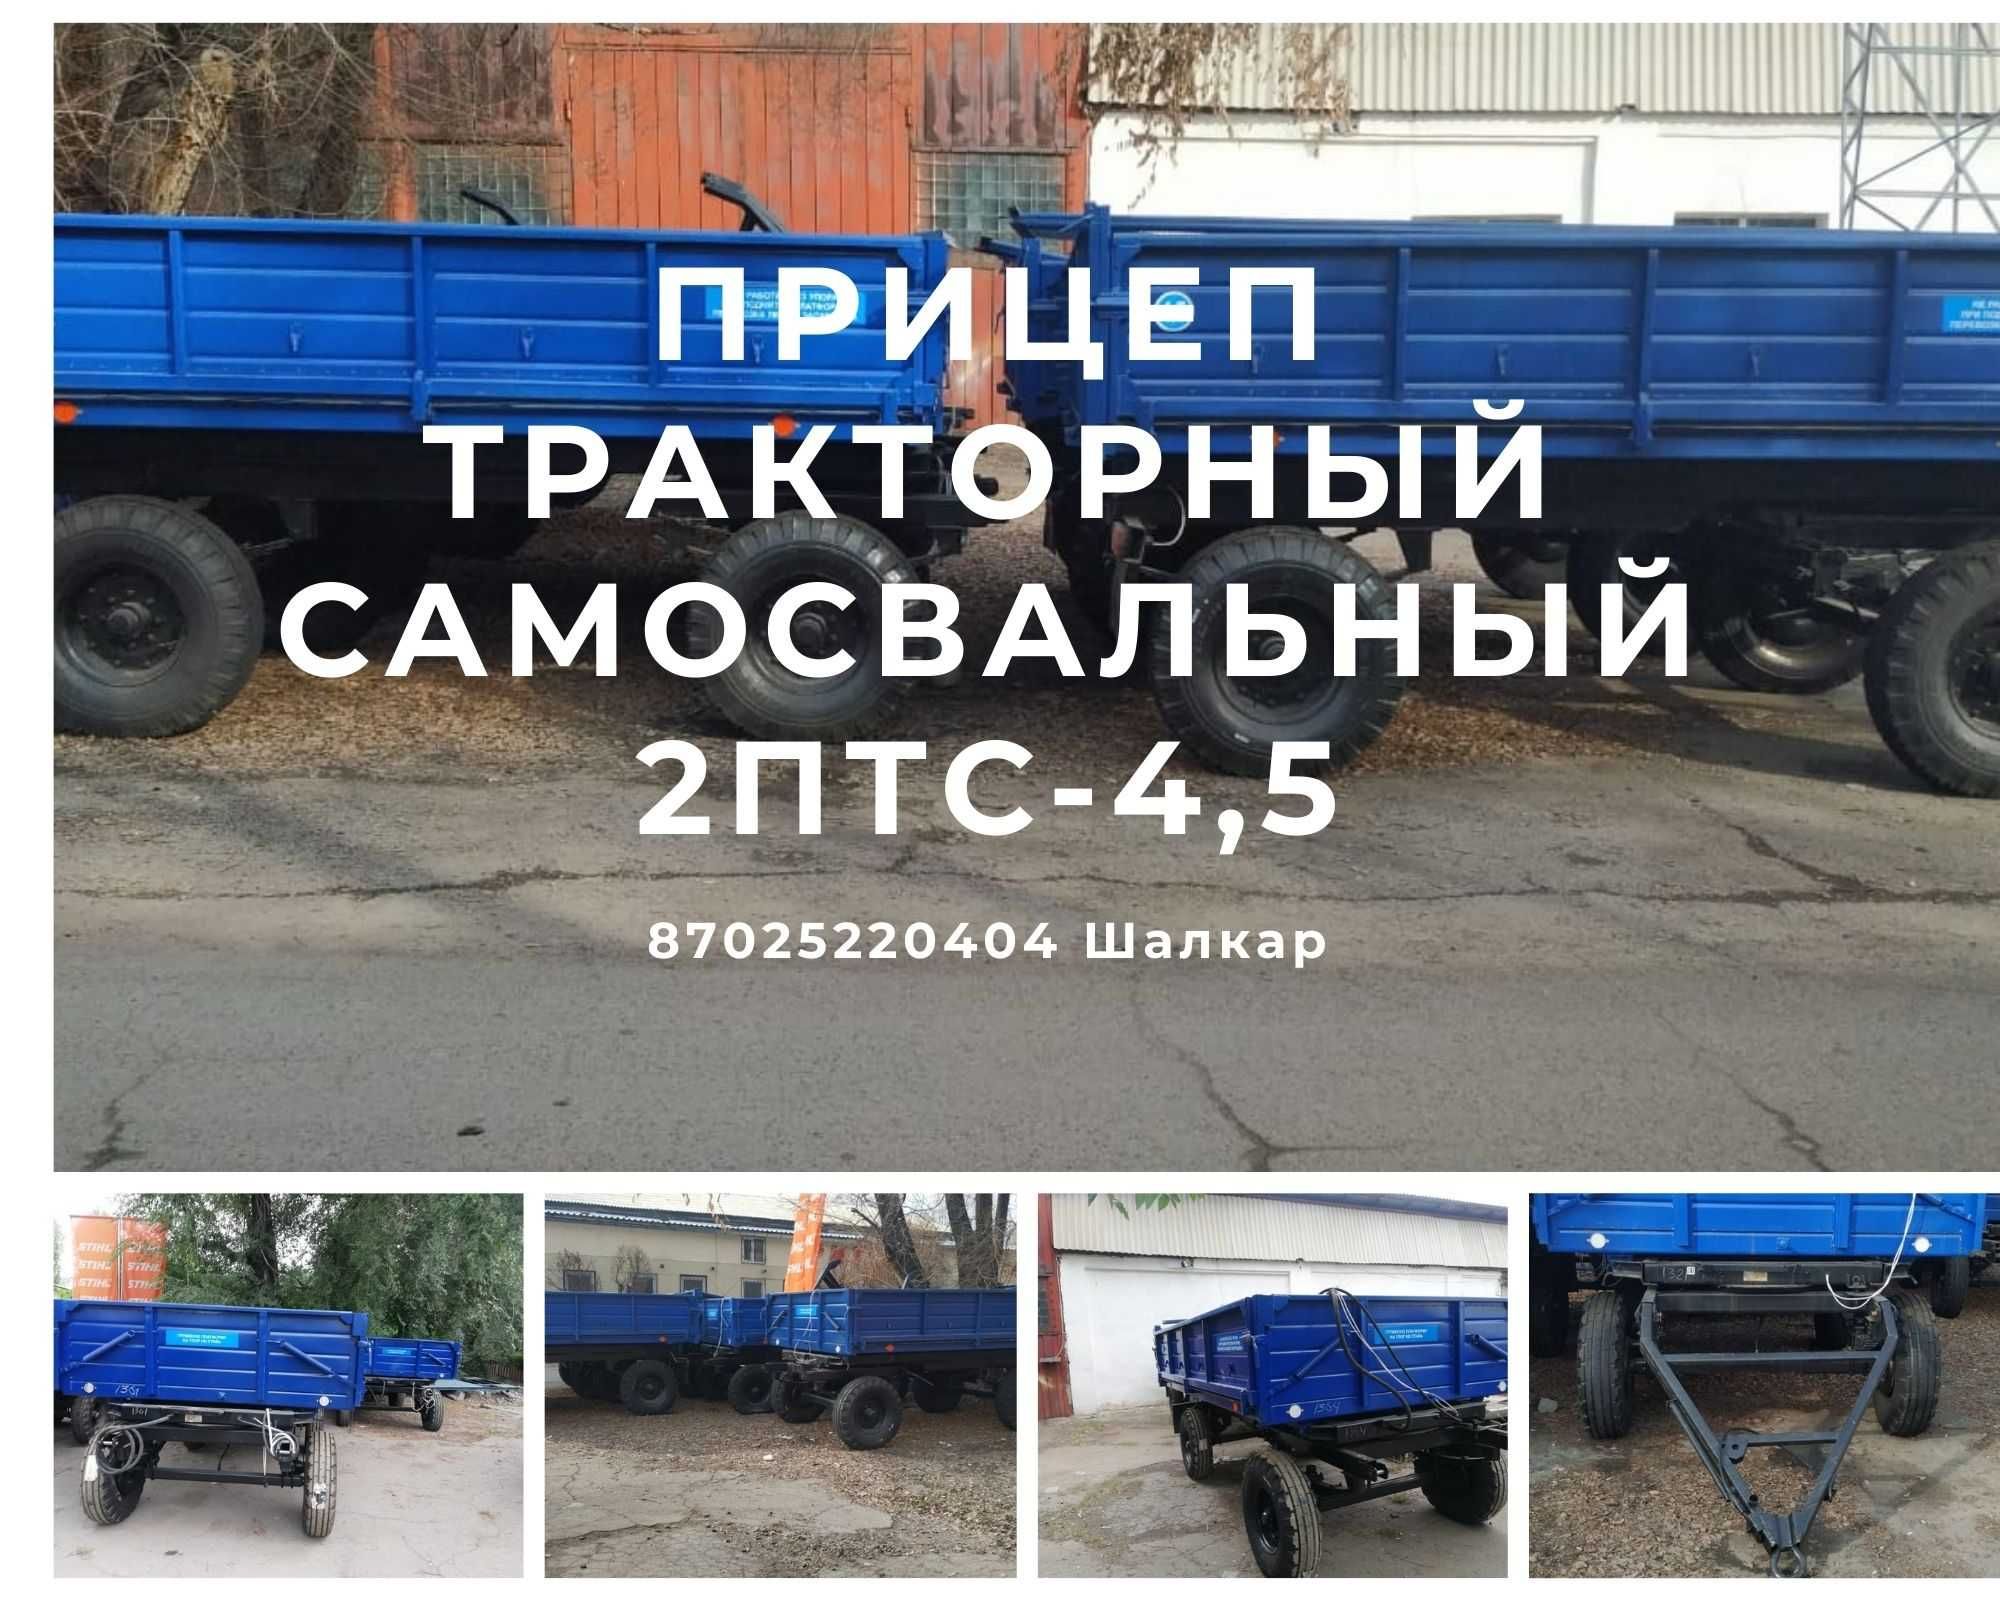 Прицеп тракторный самосвальный 2ПТС-4,5